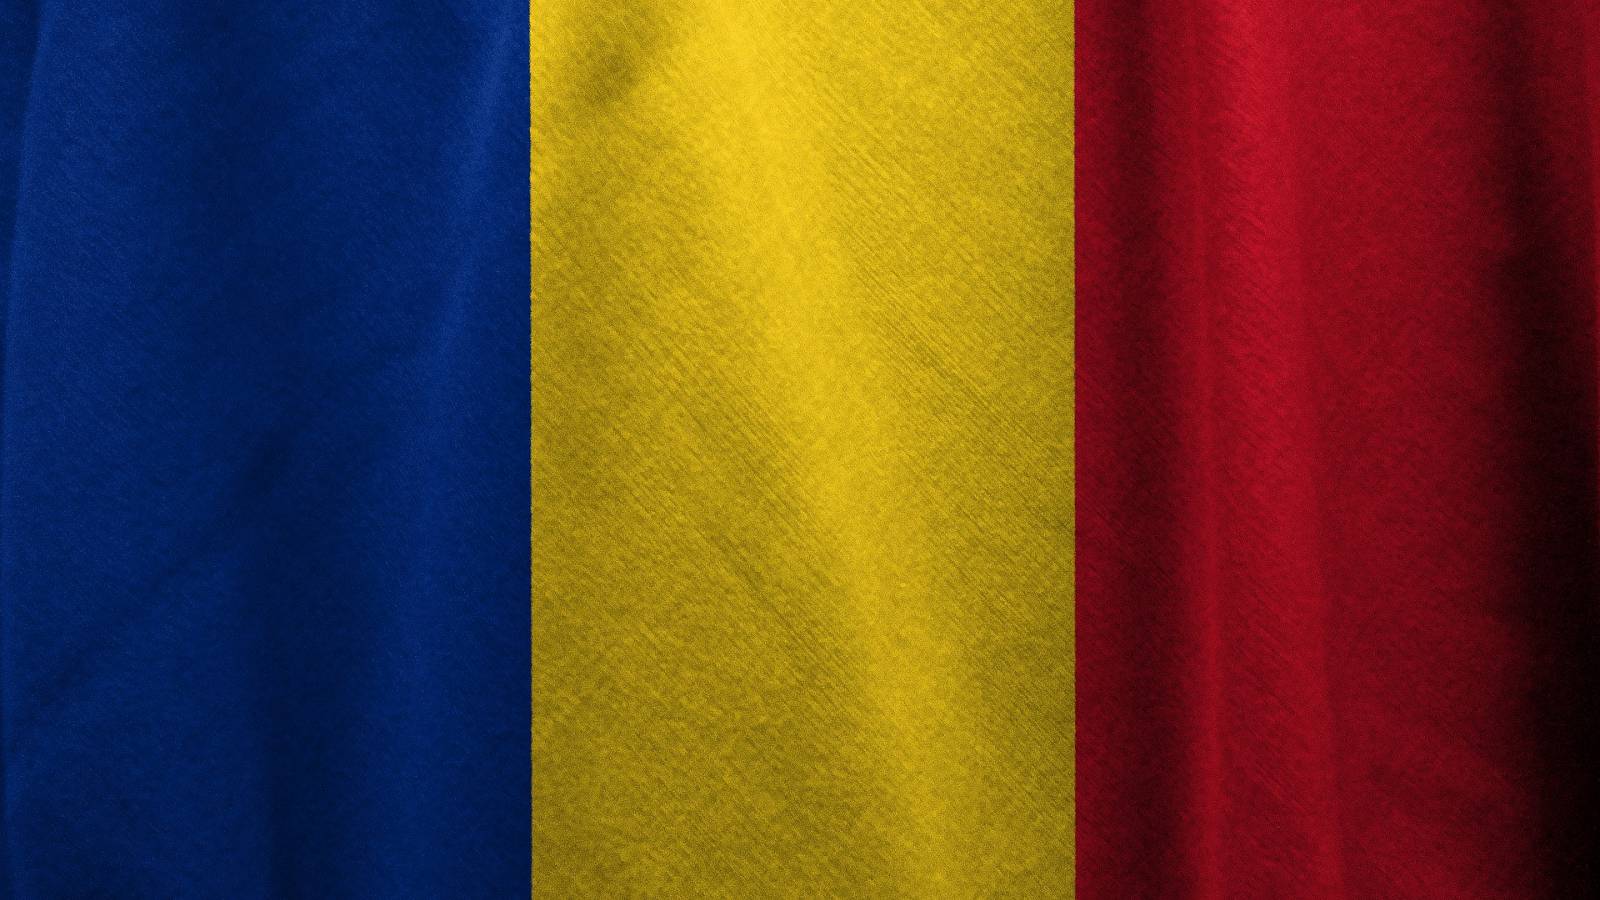 Incidensraterne fortsætter med at stige i Rumænien den 14. januar 2022